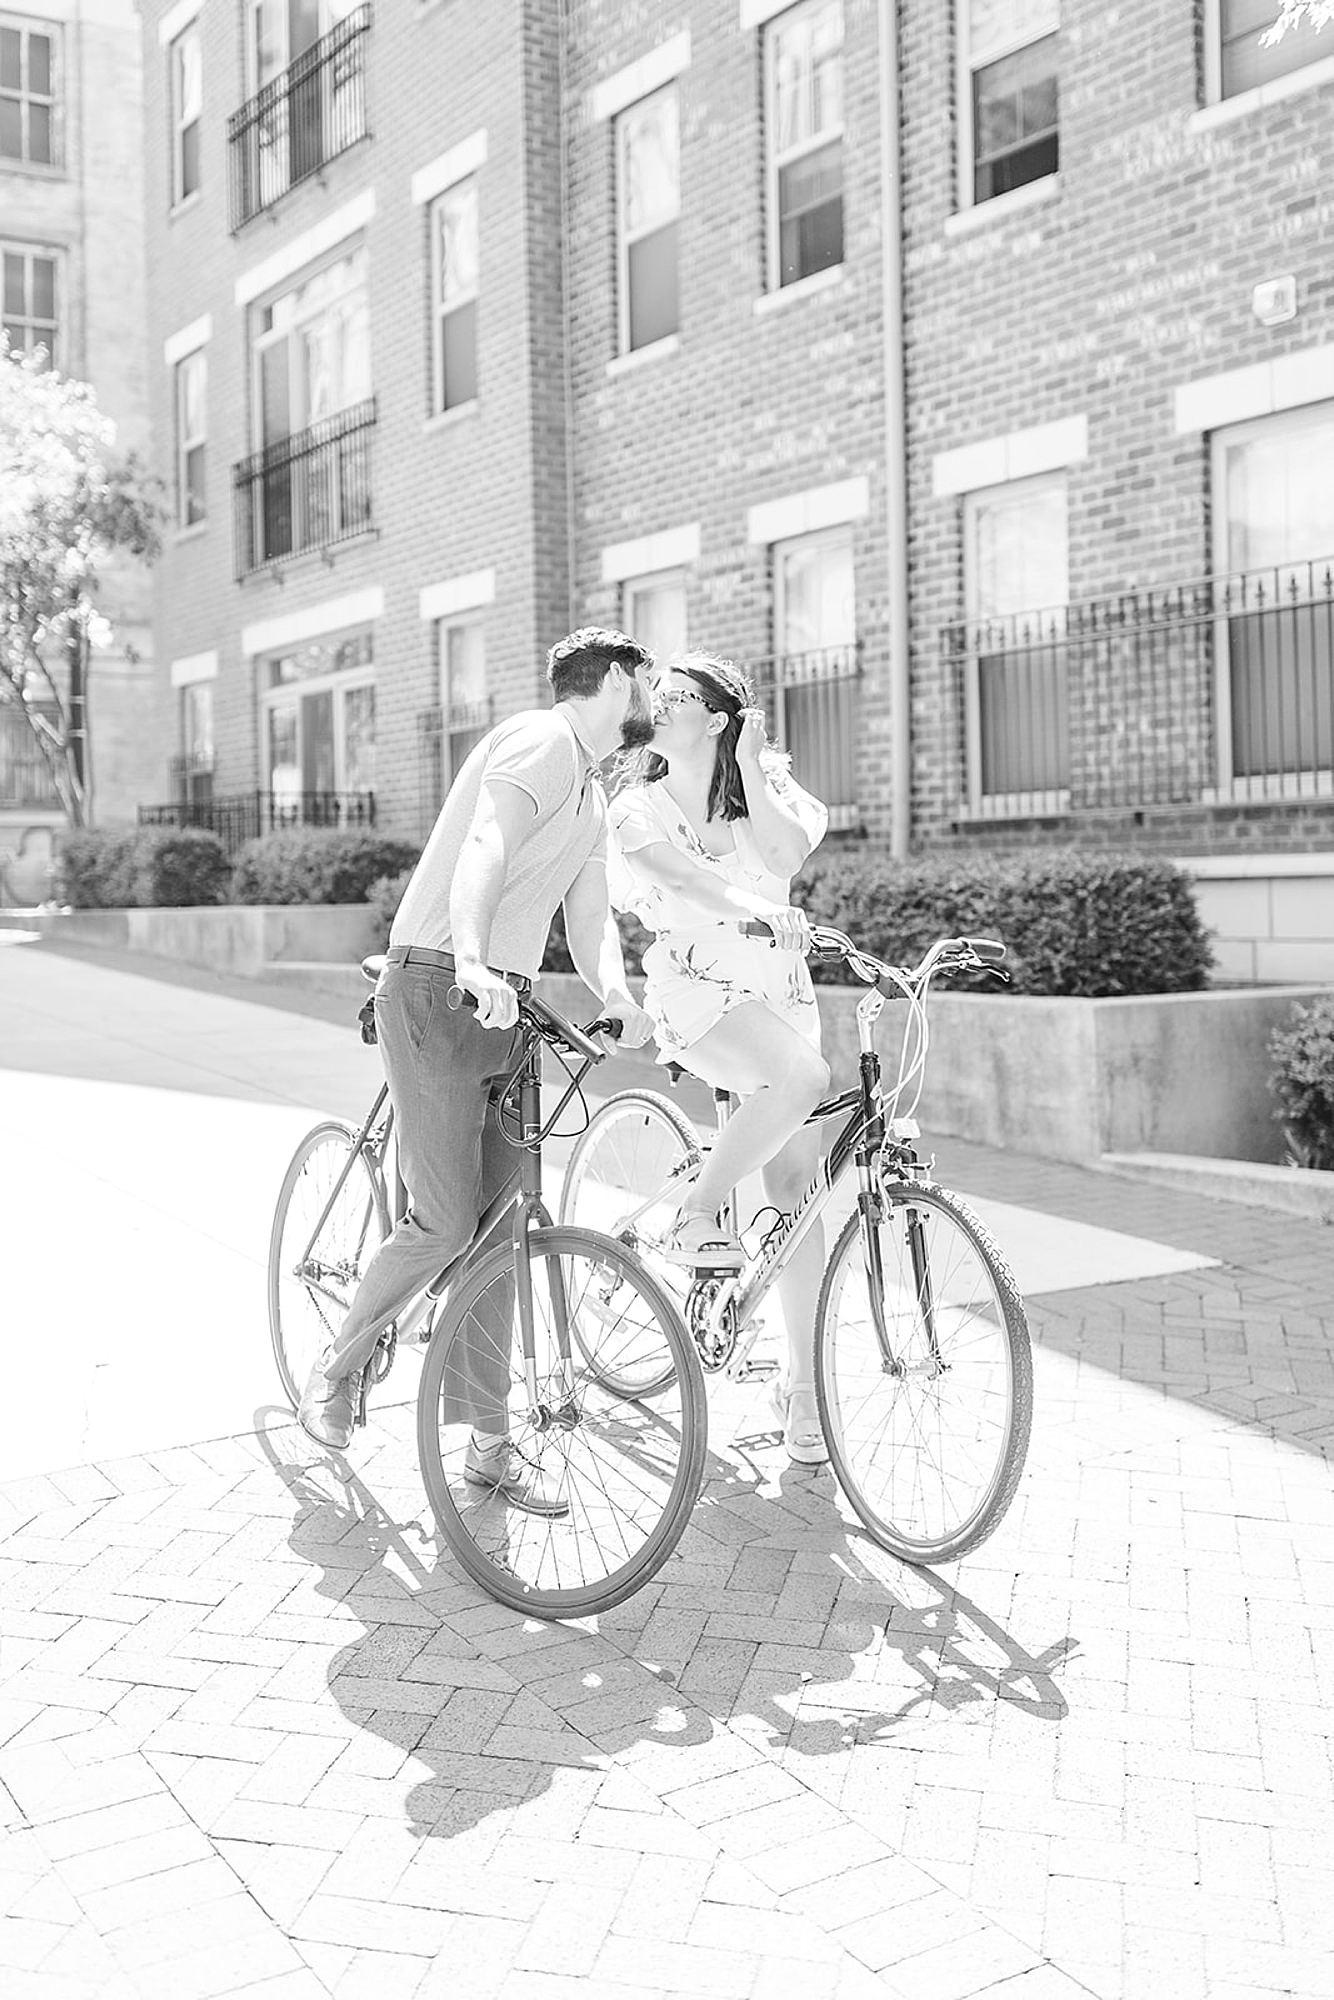 husband leans over bike to kiss wife